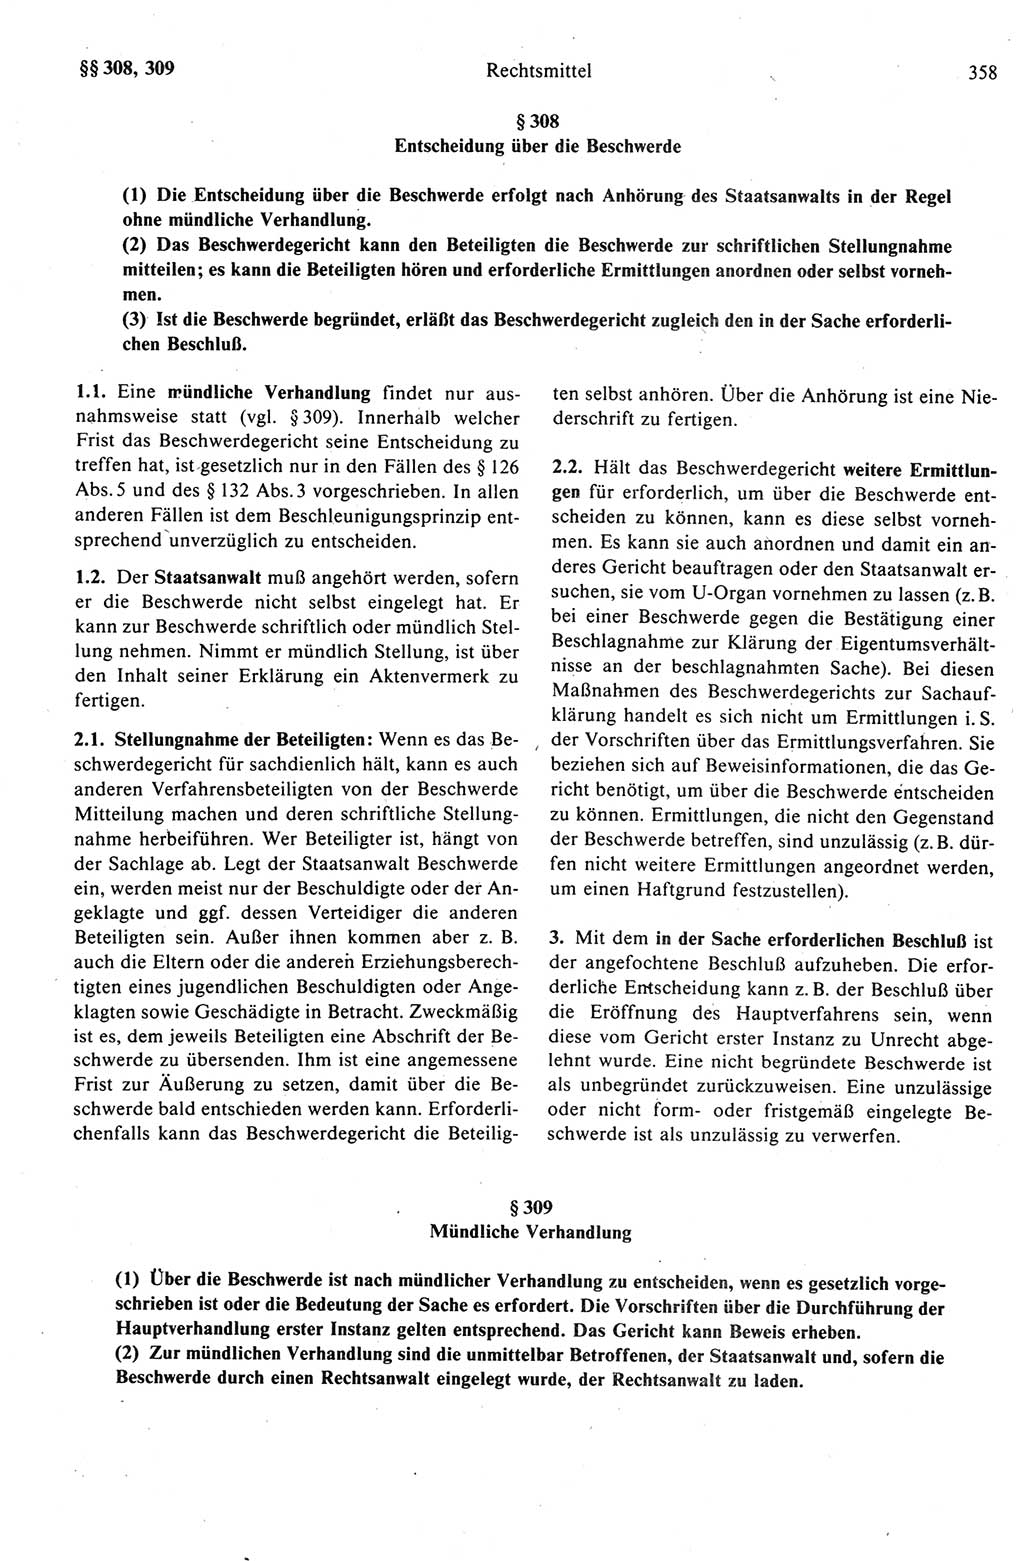 Strafprozeßrecht der DDR (Deutsche Demokratische Republik), Kommentar zur Strafprozeßordnung (StPO) 1989, Seite 358 (Strafprozeßr. DDR Komm. StPO 1989, S. 358)